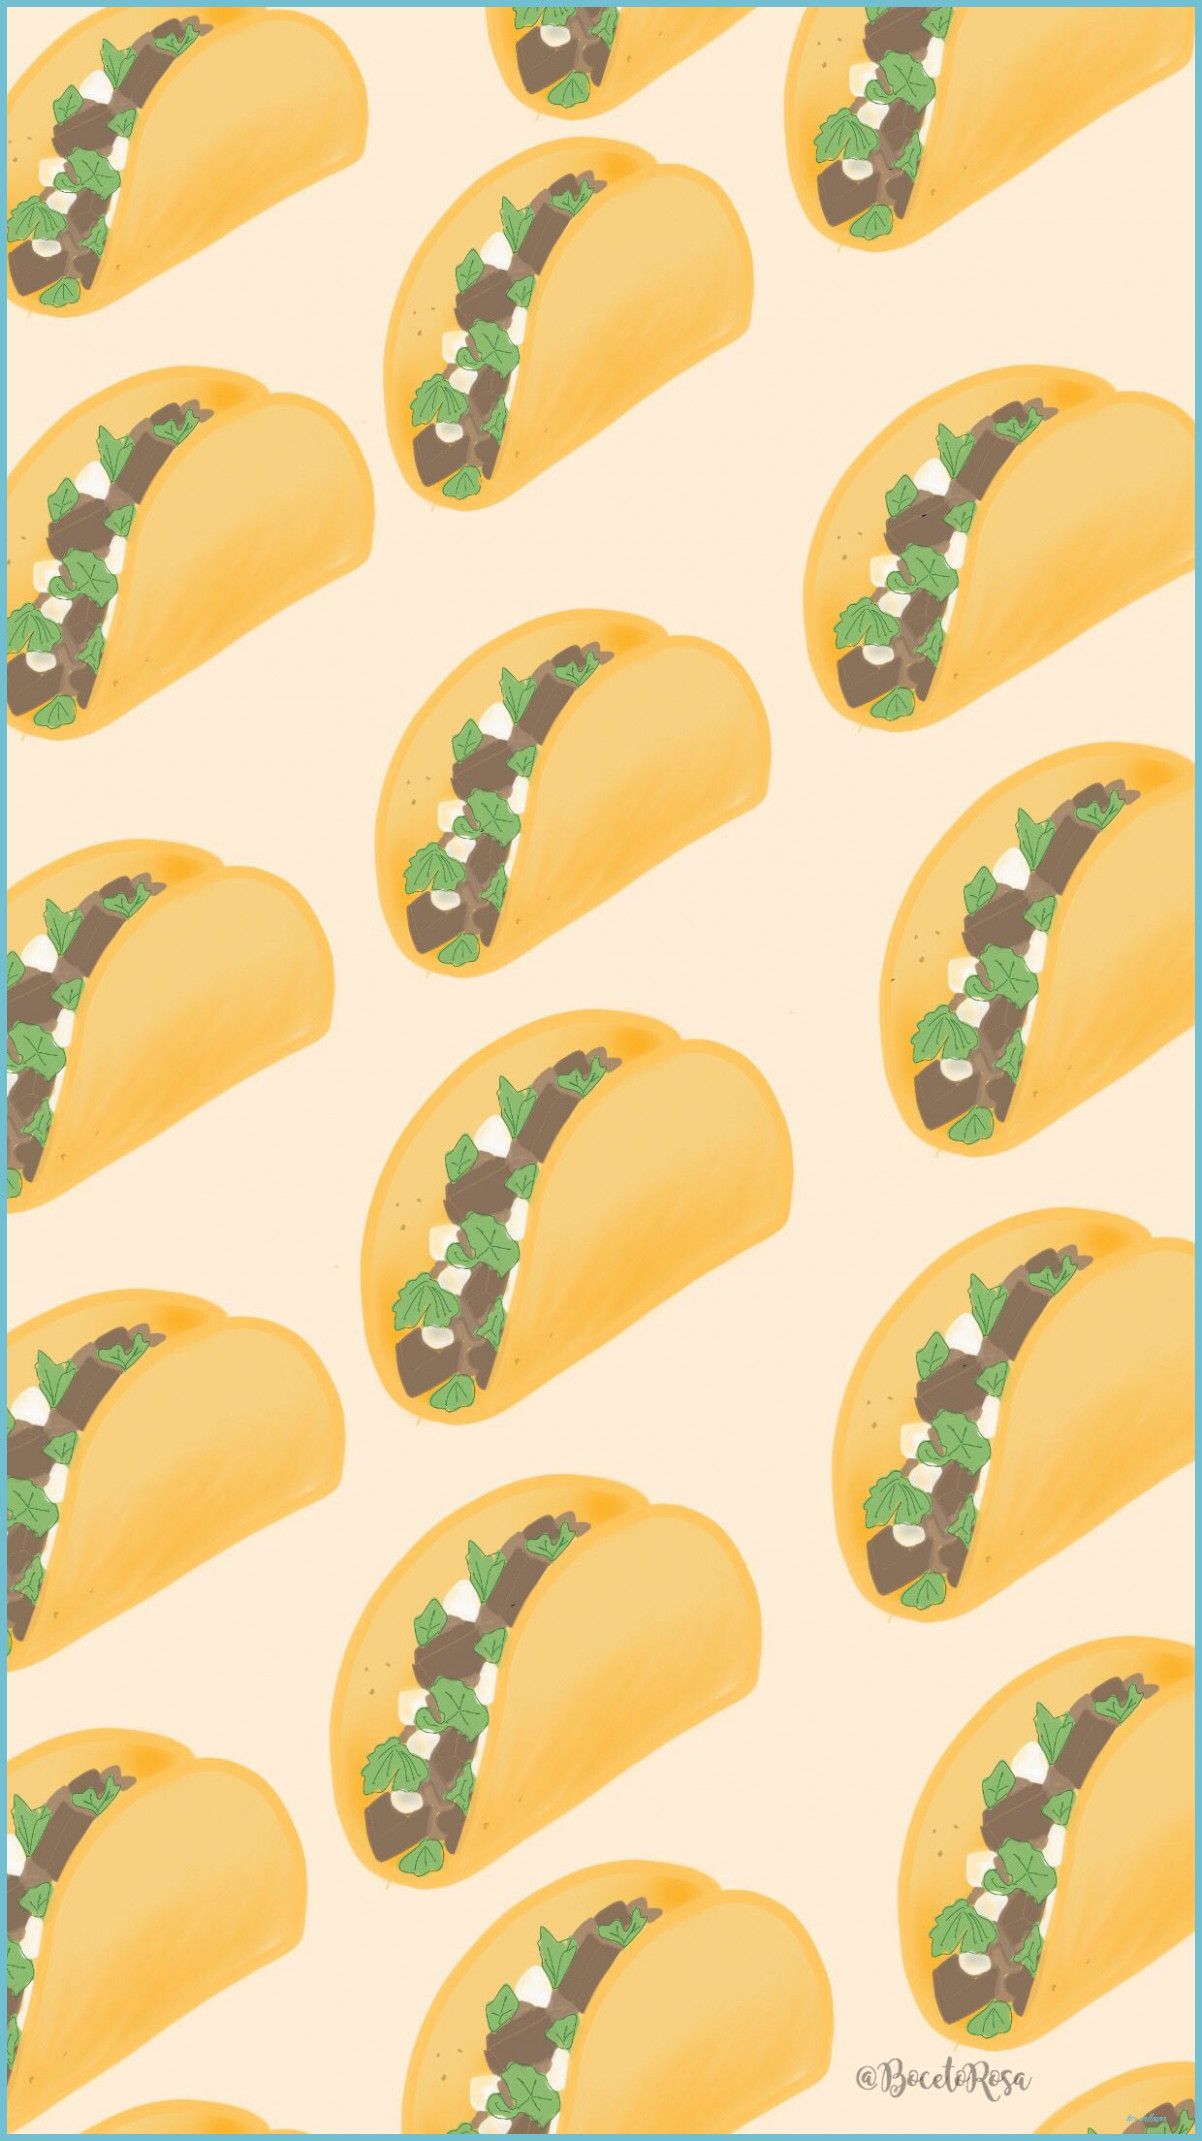 IPad Wallpaper Taco